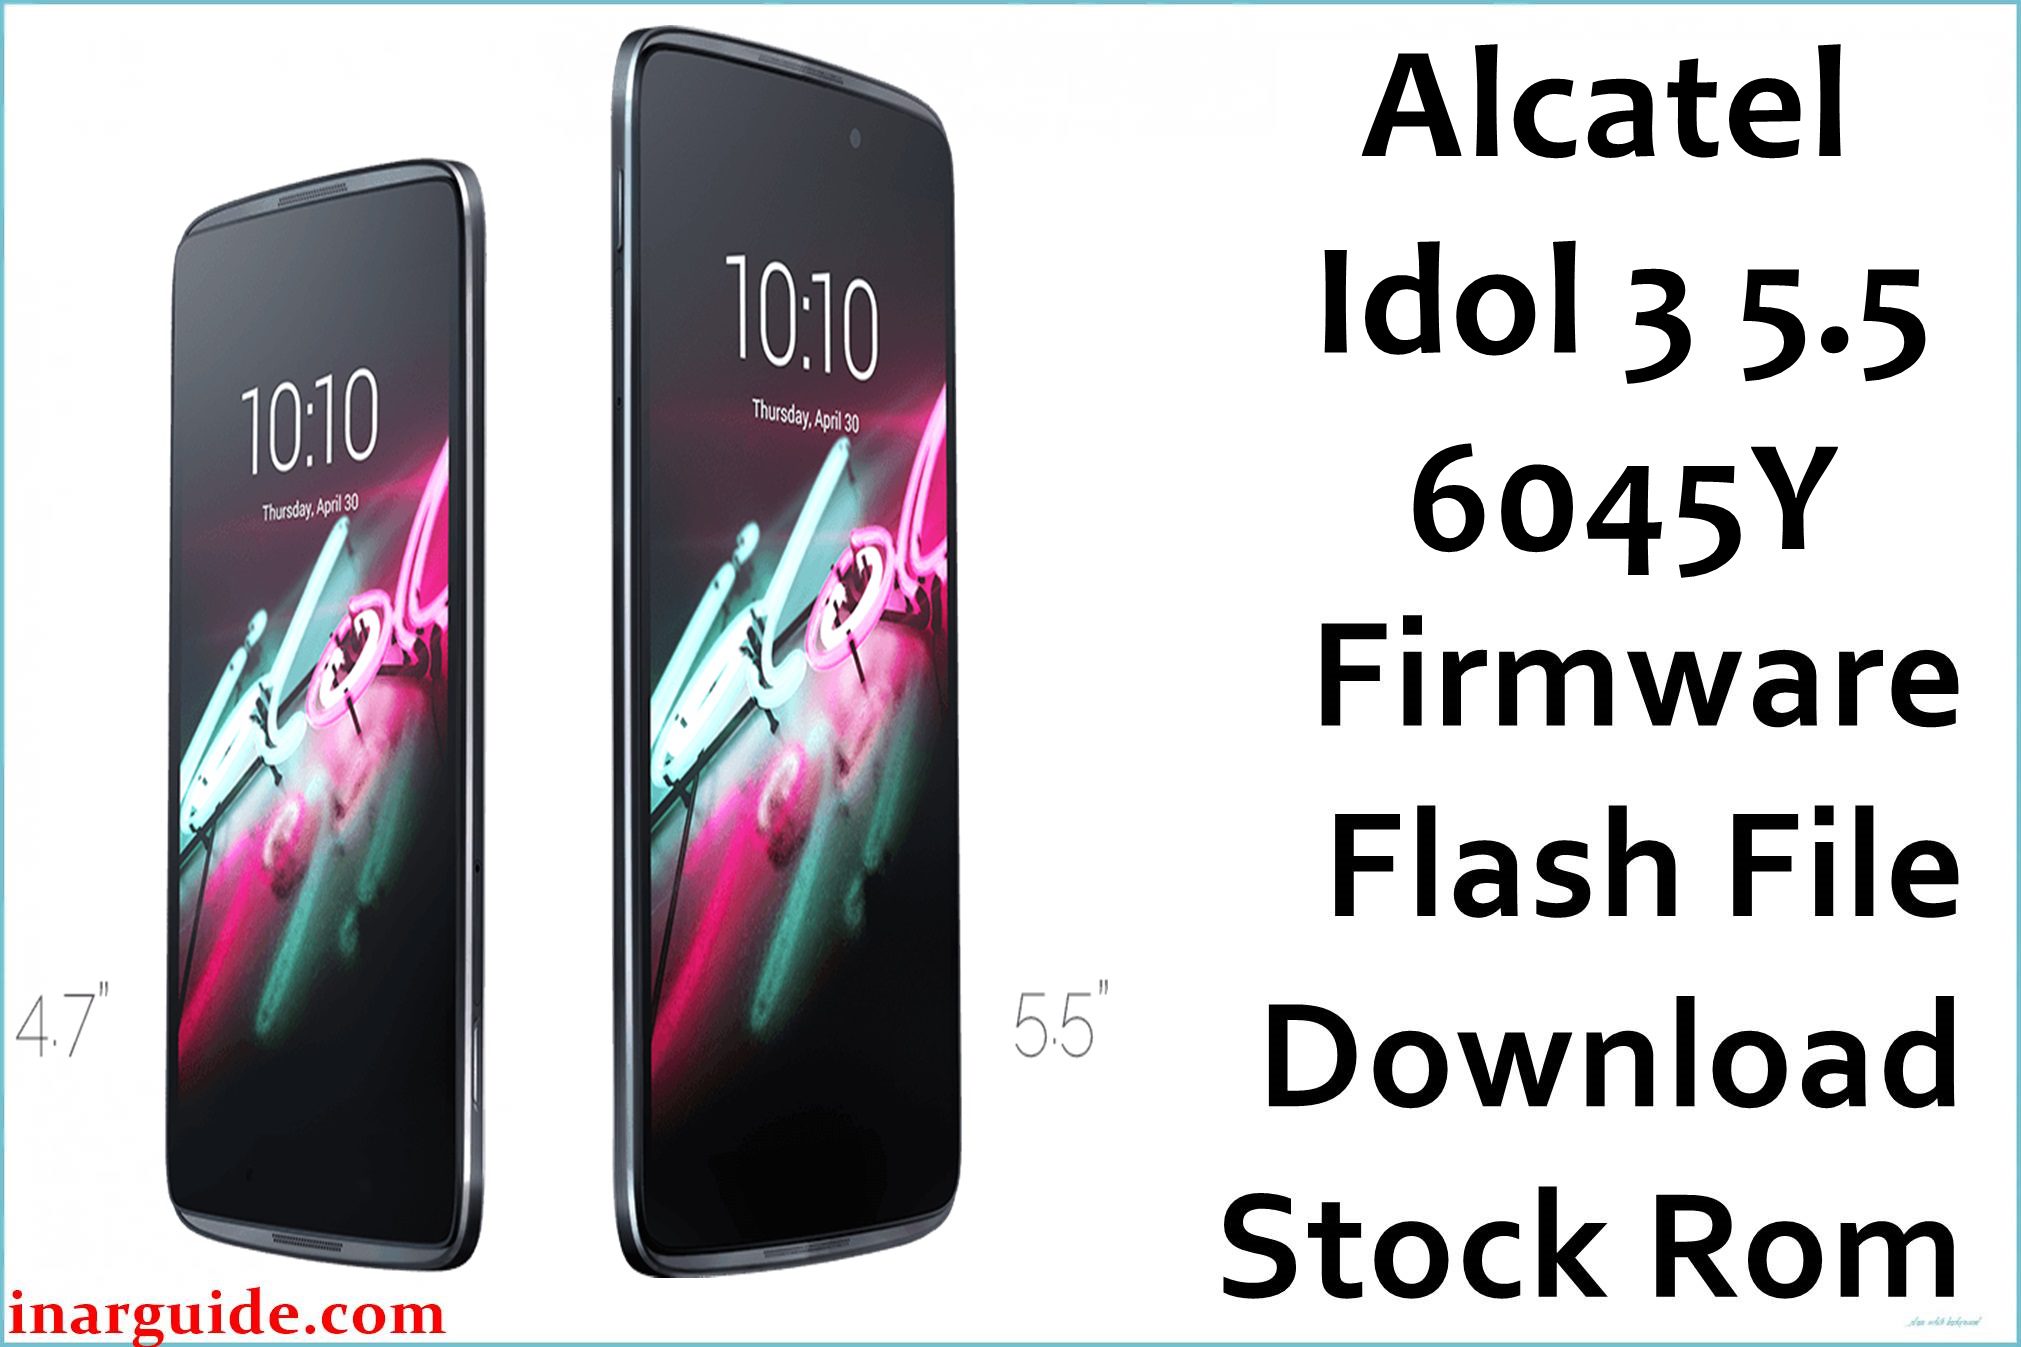 Alcatel Idol 3 5.5 6045Y